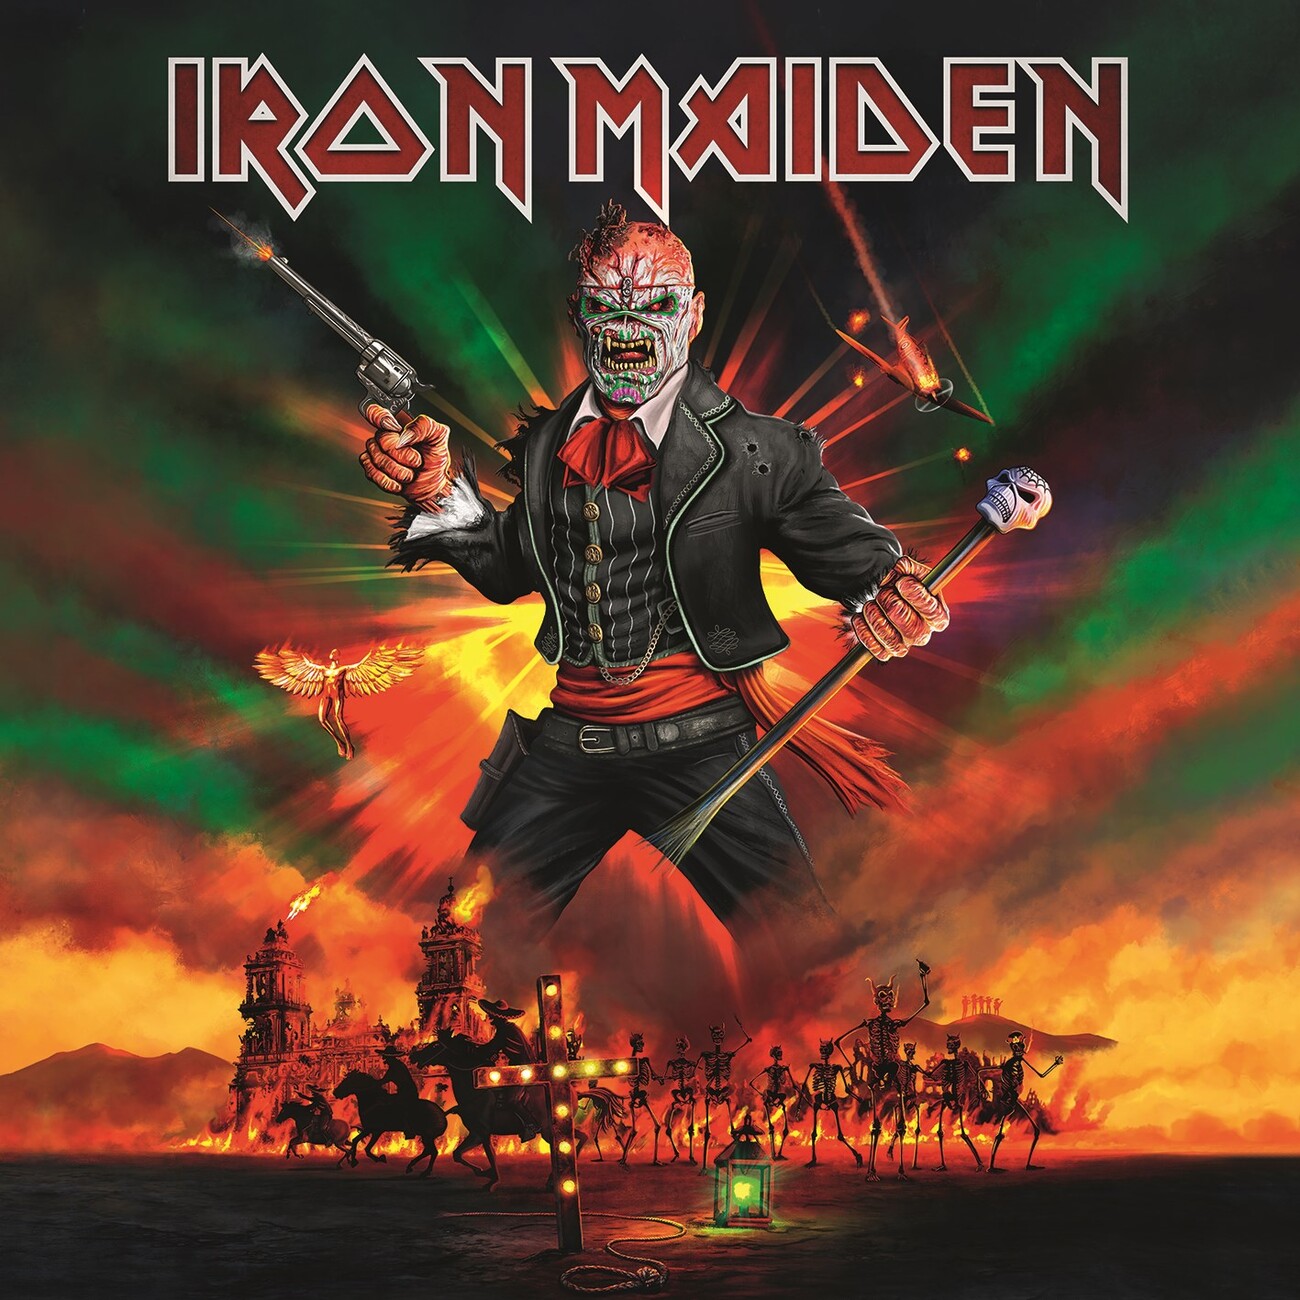 Iron Maiden - RaymondCalla